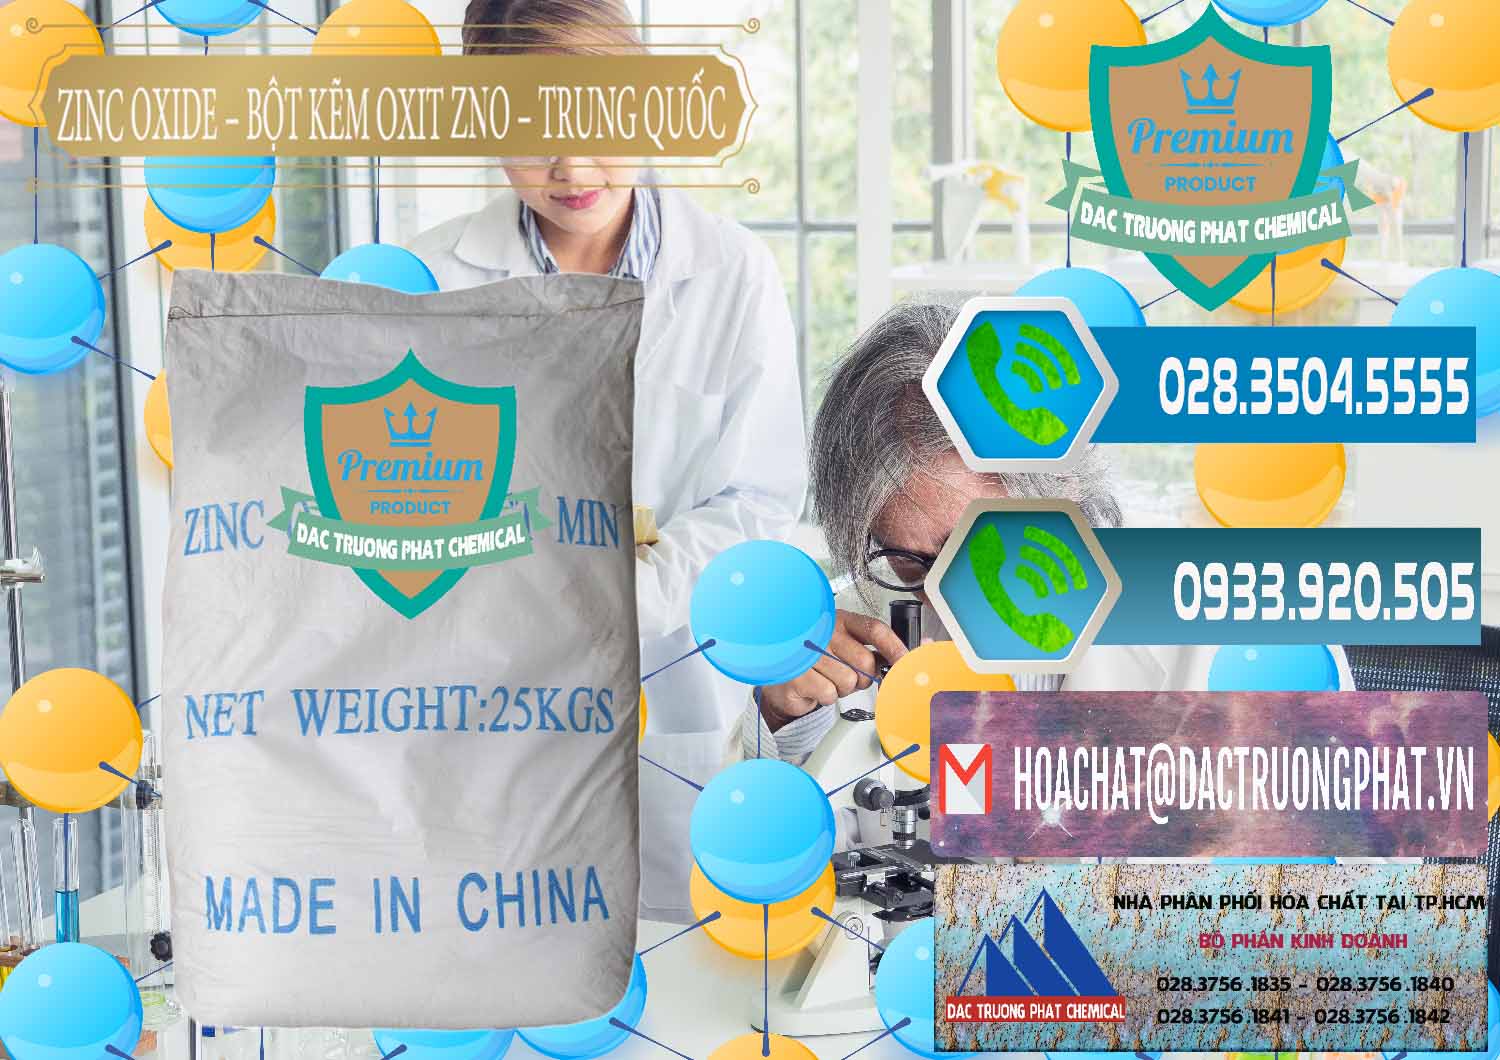 Cty chuyên nhập khẩu ( bán ) Zinc Oxide - Bột Kẽm Oxit ZNO Trung Quốc China - 0182 - Nhà cung cấp và bán hóa chất tại TP.HCM - congtyhoachat.net